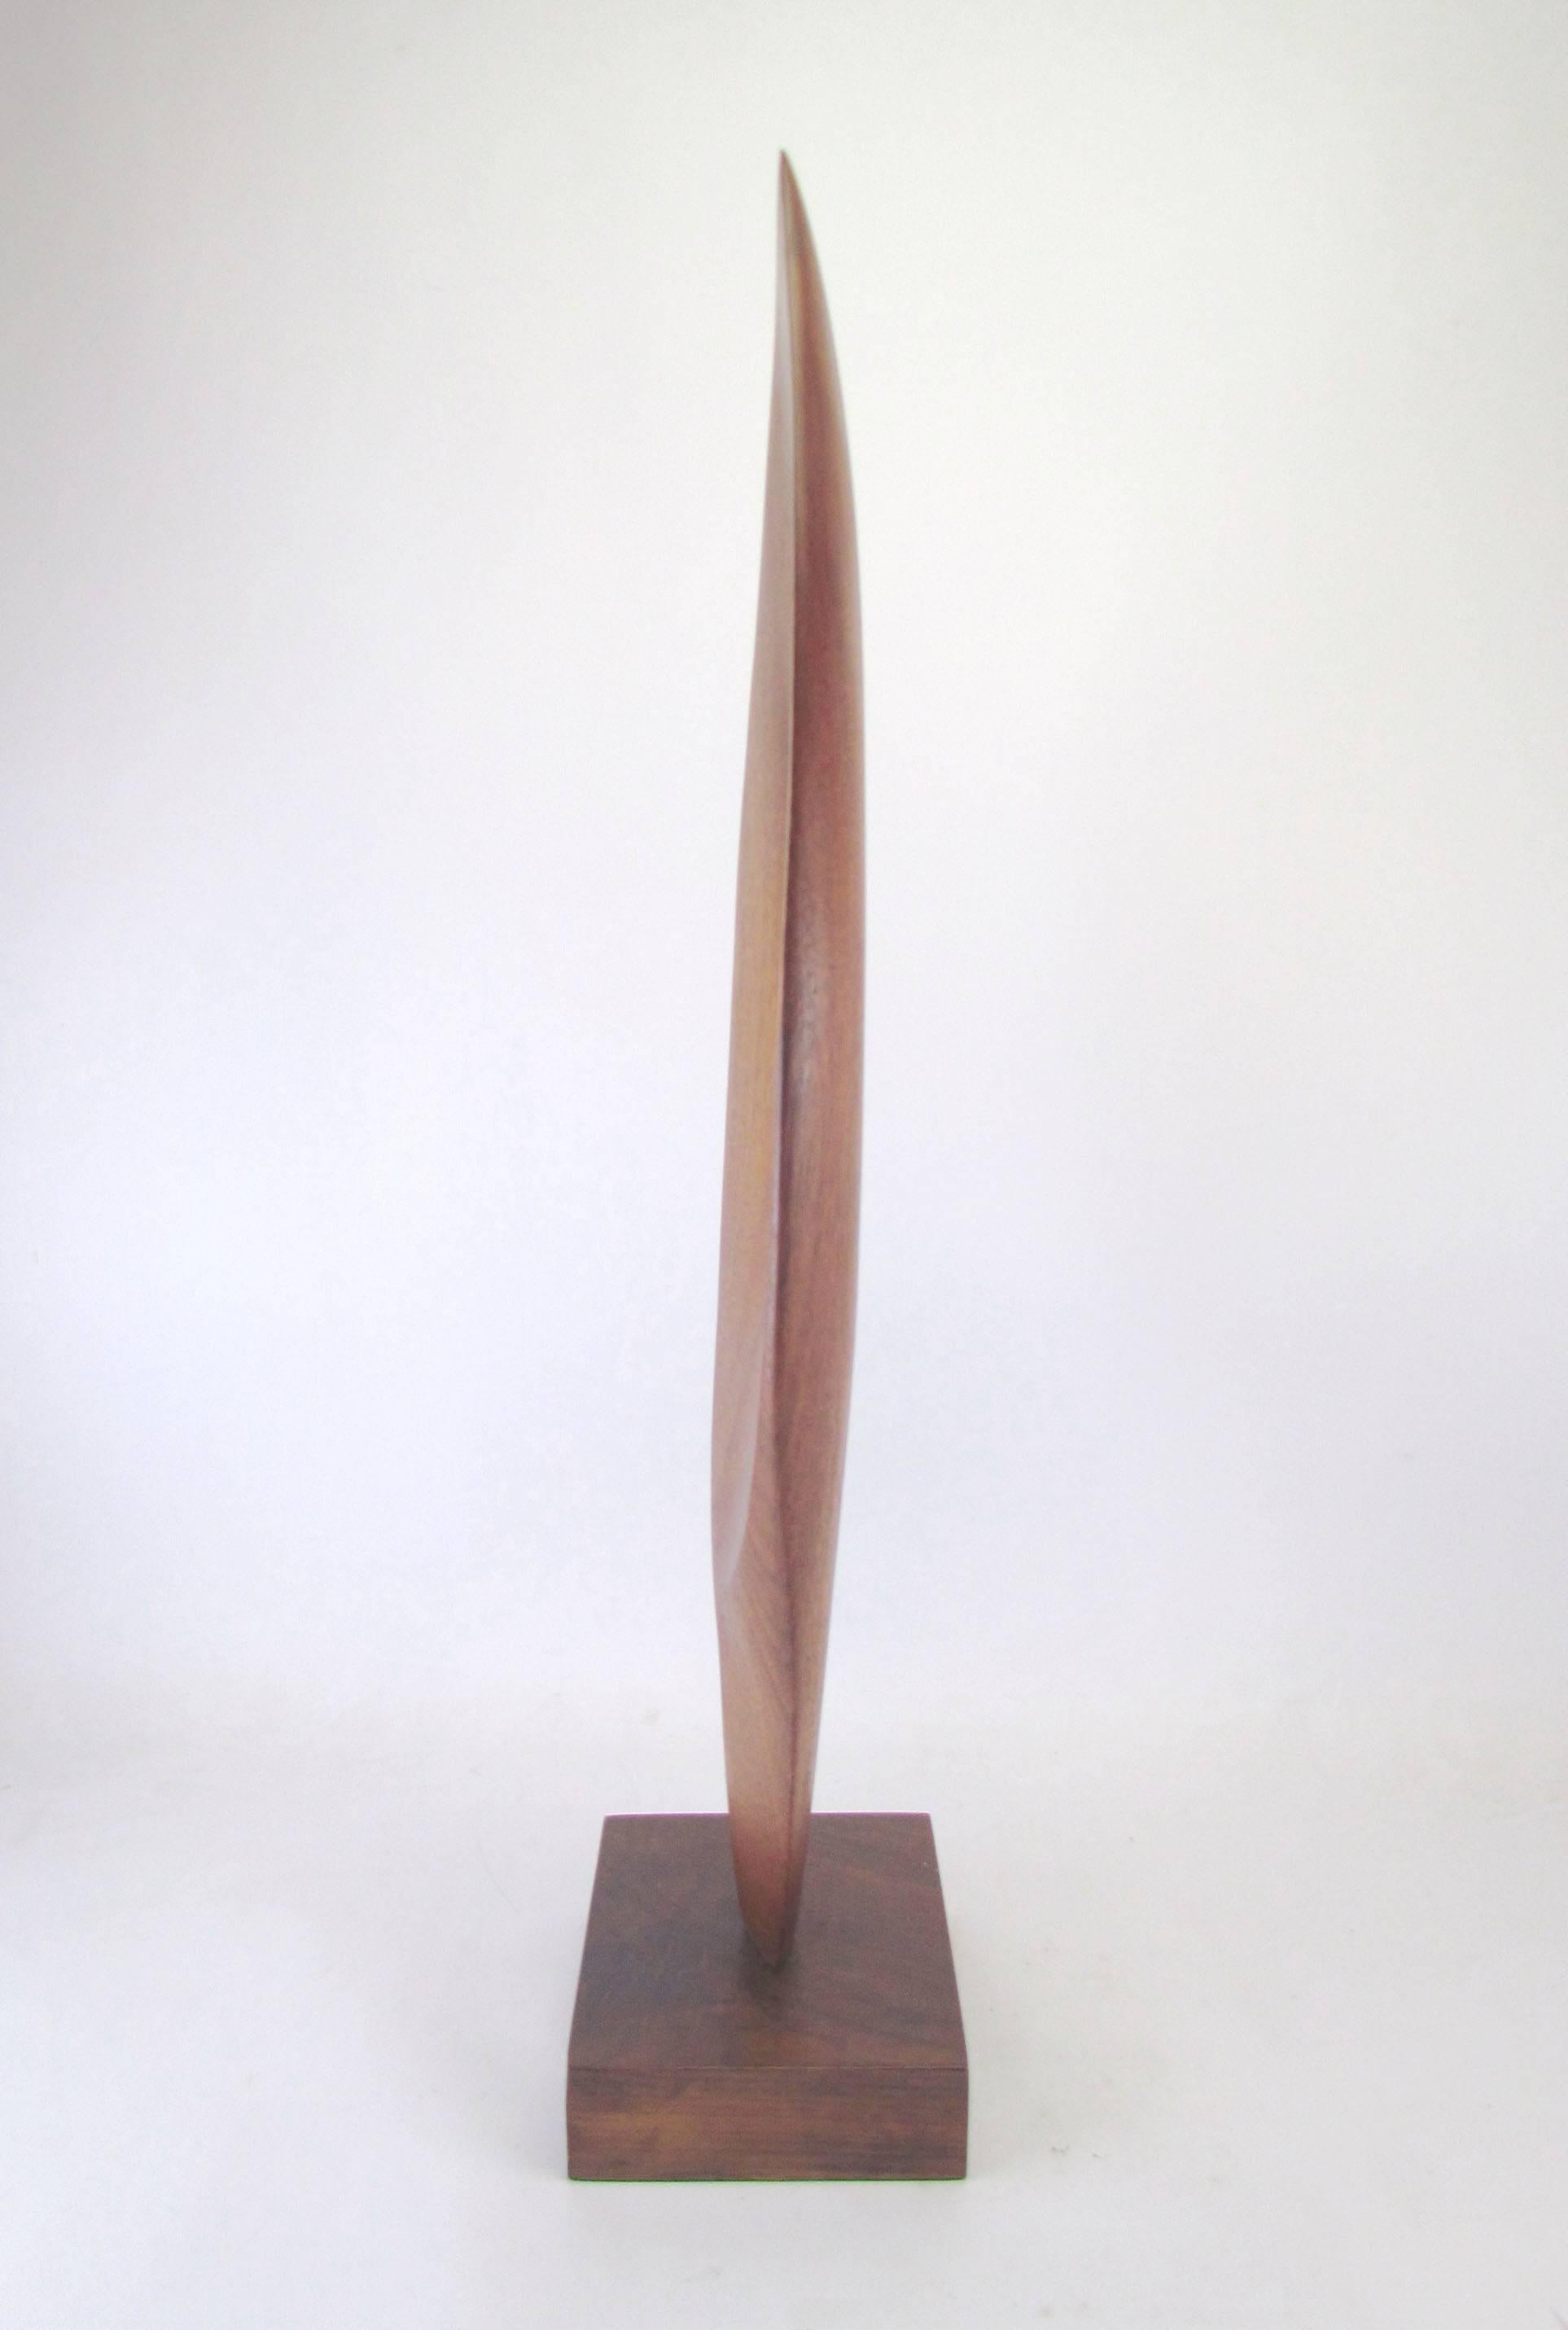 American Modernist Teak Abstract Sculpture 1973